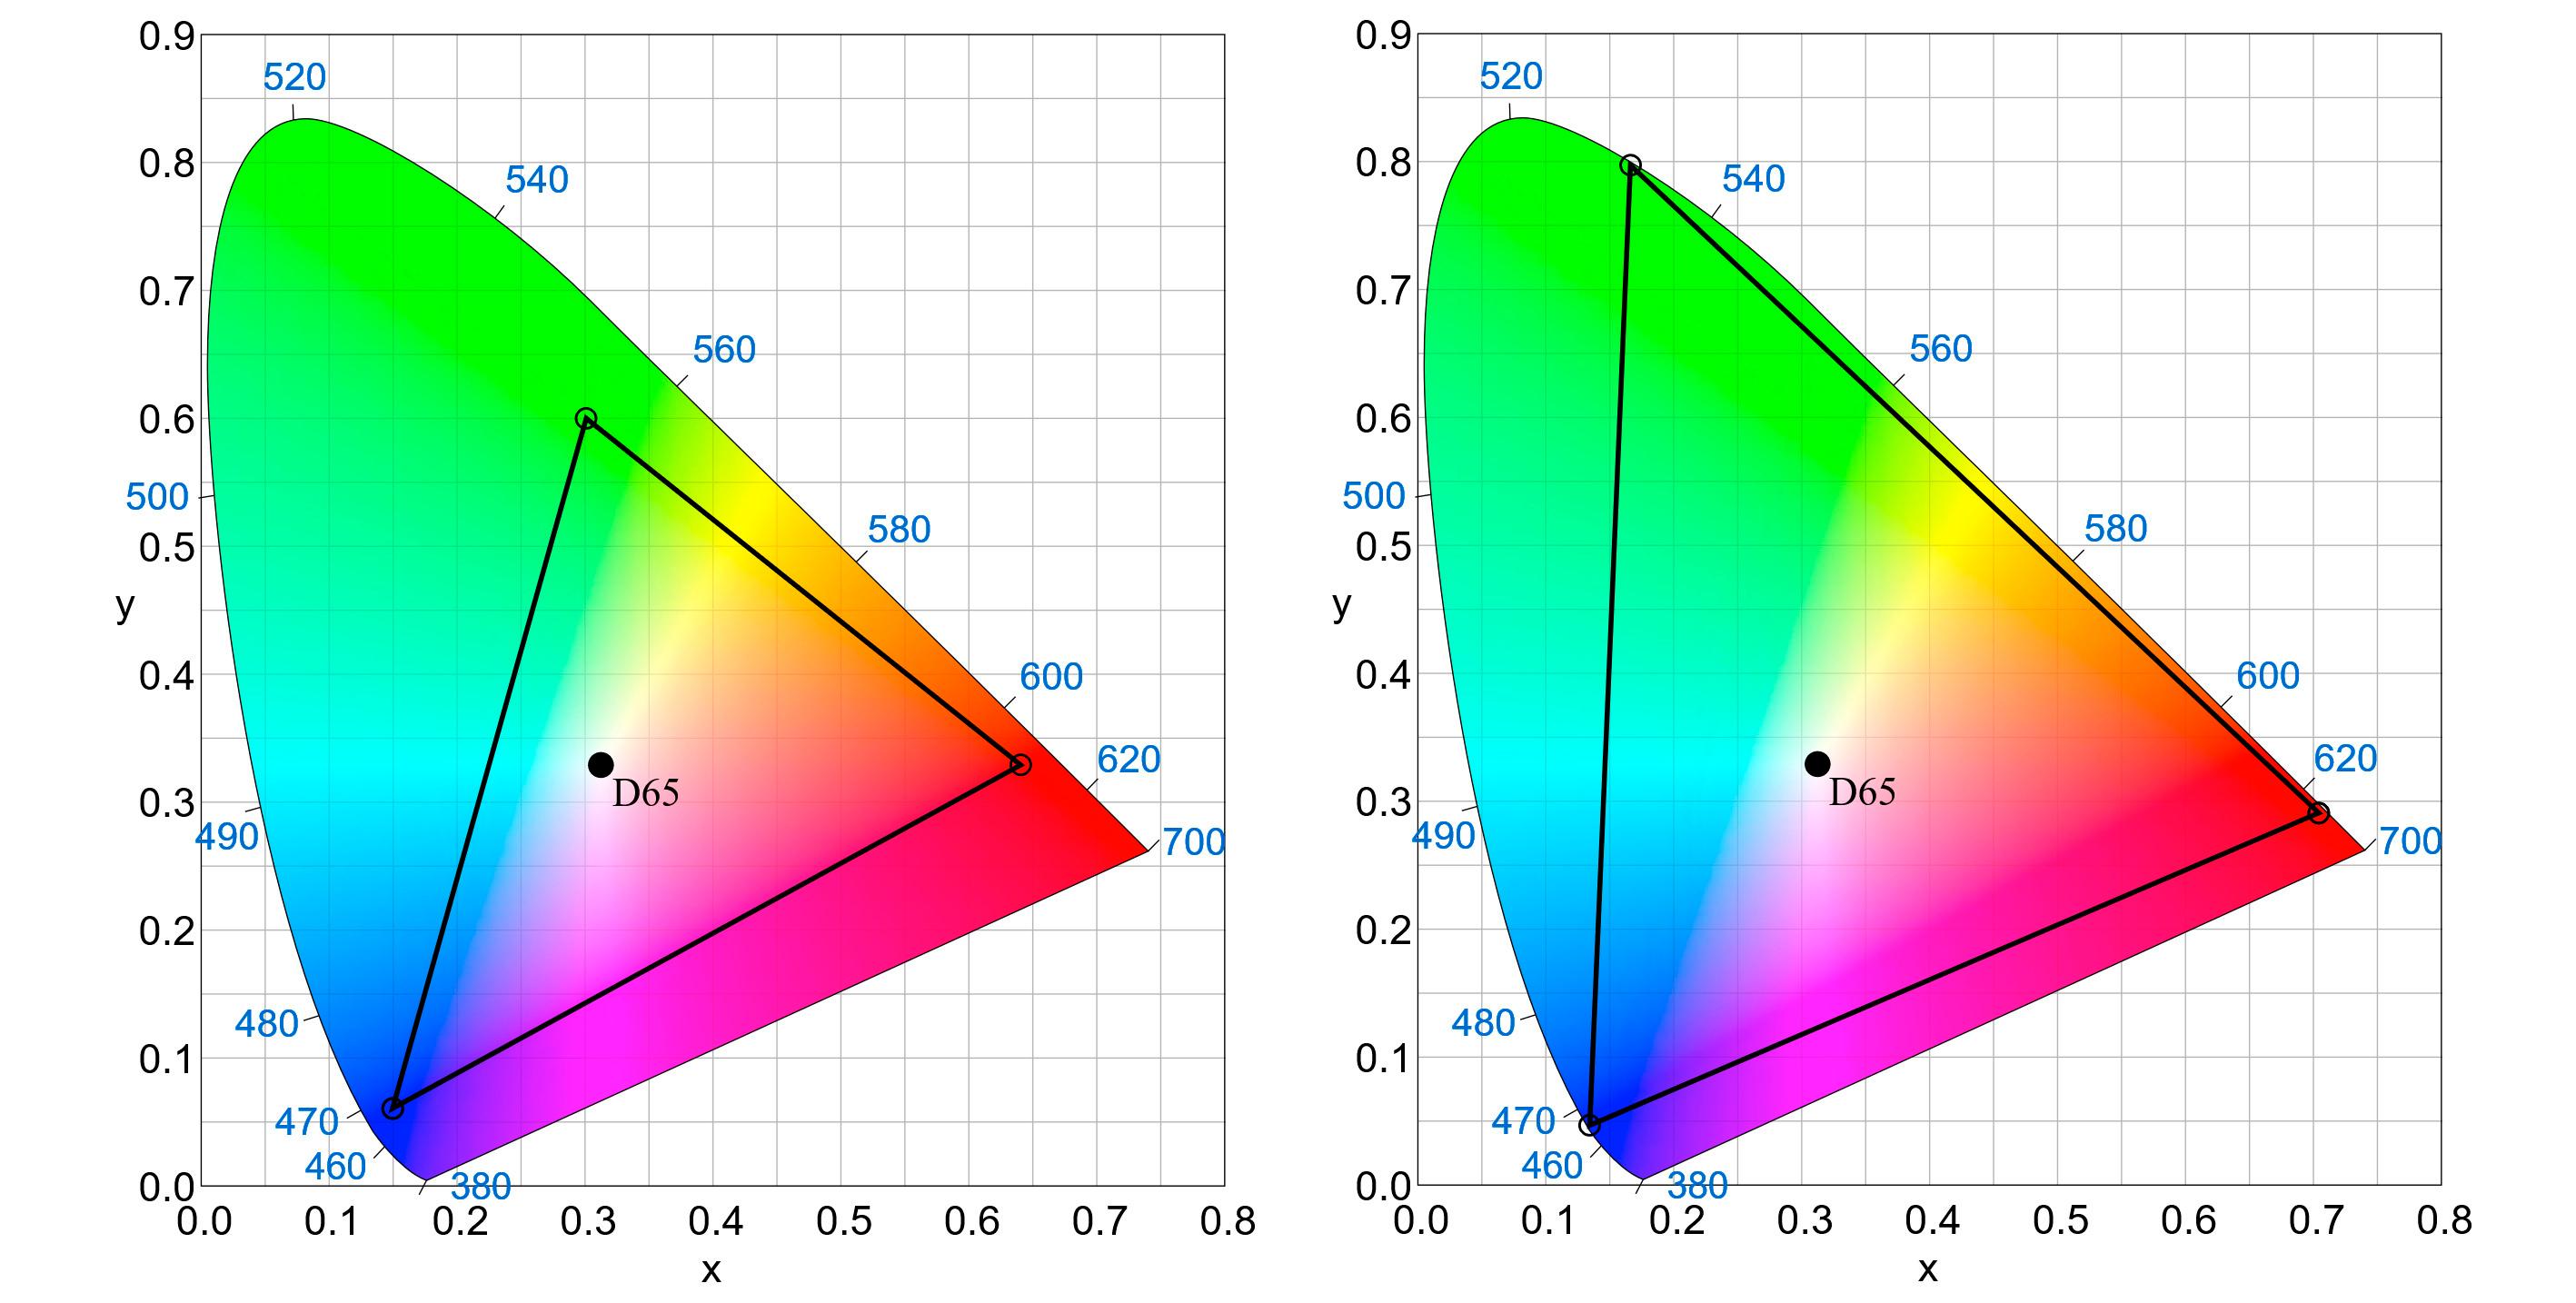 BEDRE FARGER: Hvis tv-er i fremtiden skal få riktige farger, må det finnes en standard som definerer dem korrekt. Dagens standard som benyttes er Rec 709 (til venstre). Triangelet mellom rødt, grønt og blått indikerer hvor mye den kan gjengi av det synlig spekteret. Til høyre ser vi hvor mye større fargeområdet kommende Rec 2020 vil dekke. D65 i midten er punktet som defineres som hvitt.